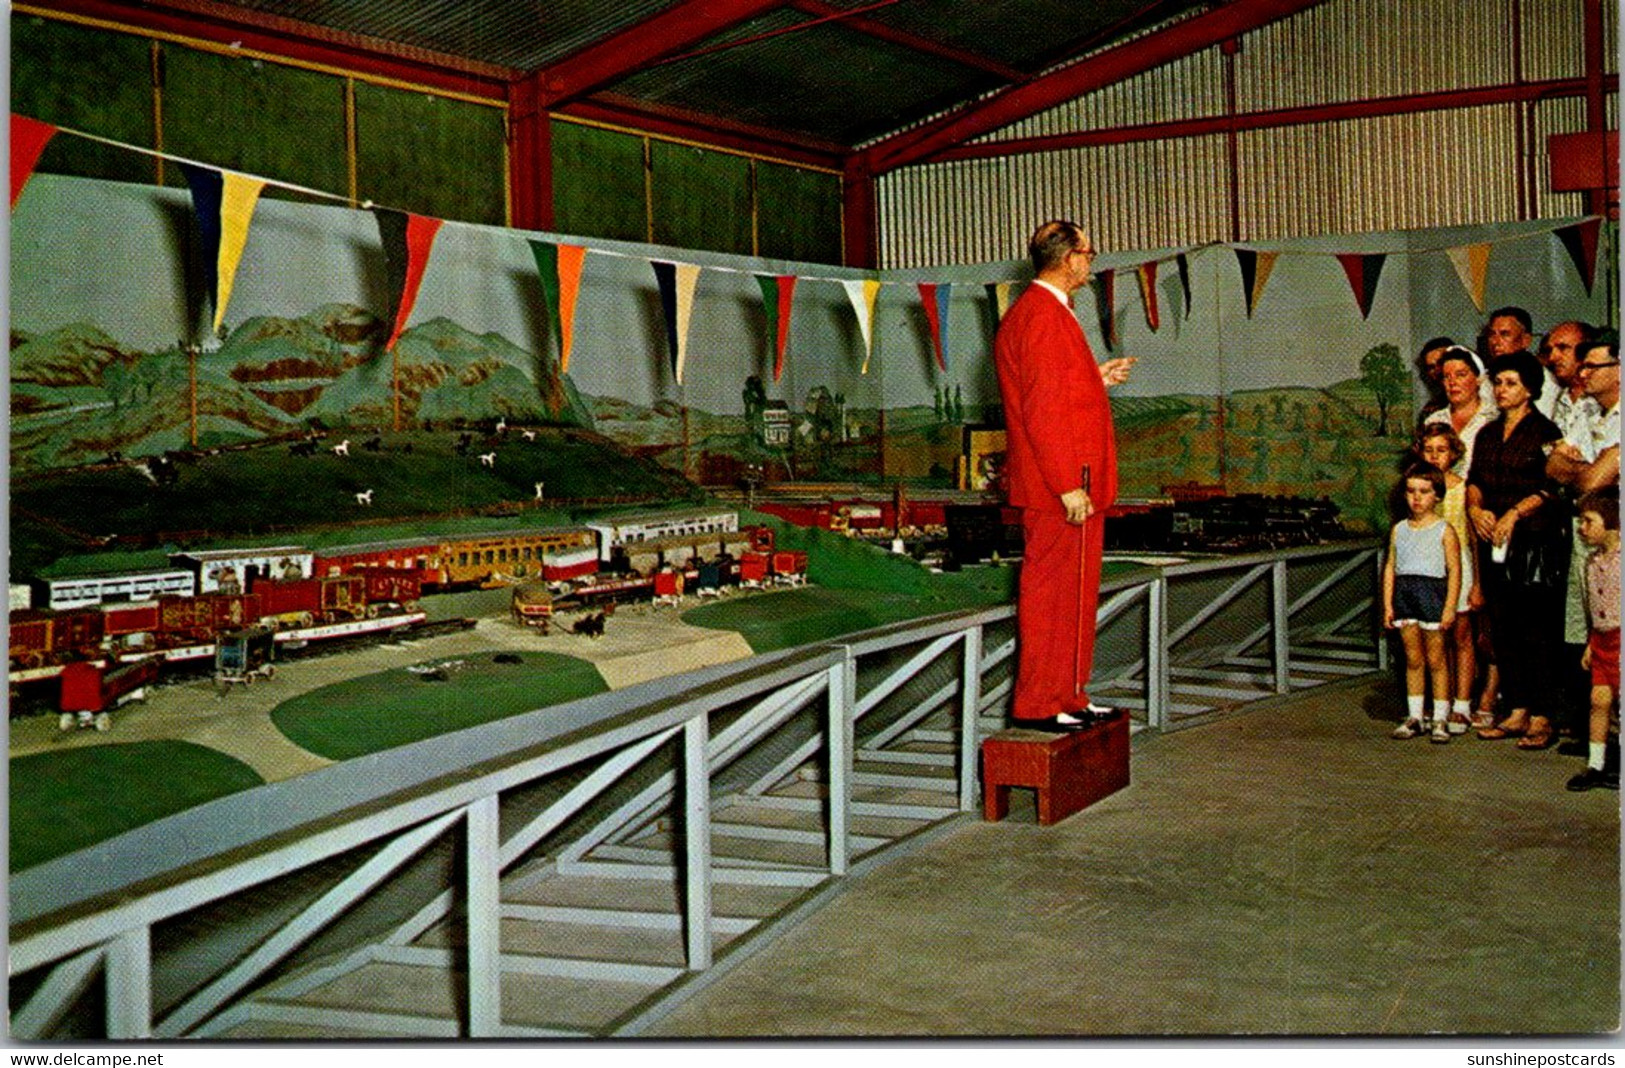 Florida Sarasota Circus Hall Of Fame Circus Rail Transportation Exhibit In Miniature - Sarasota